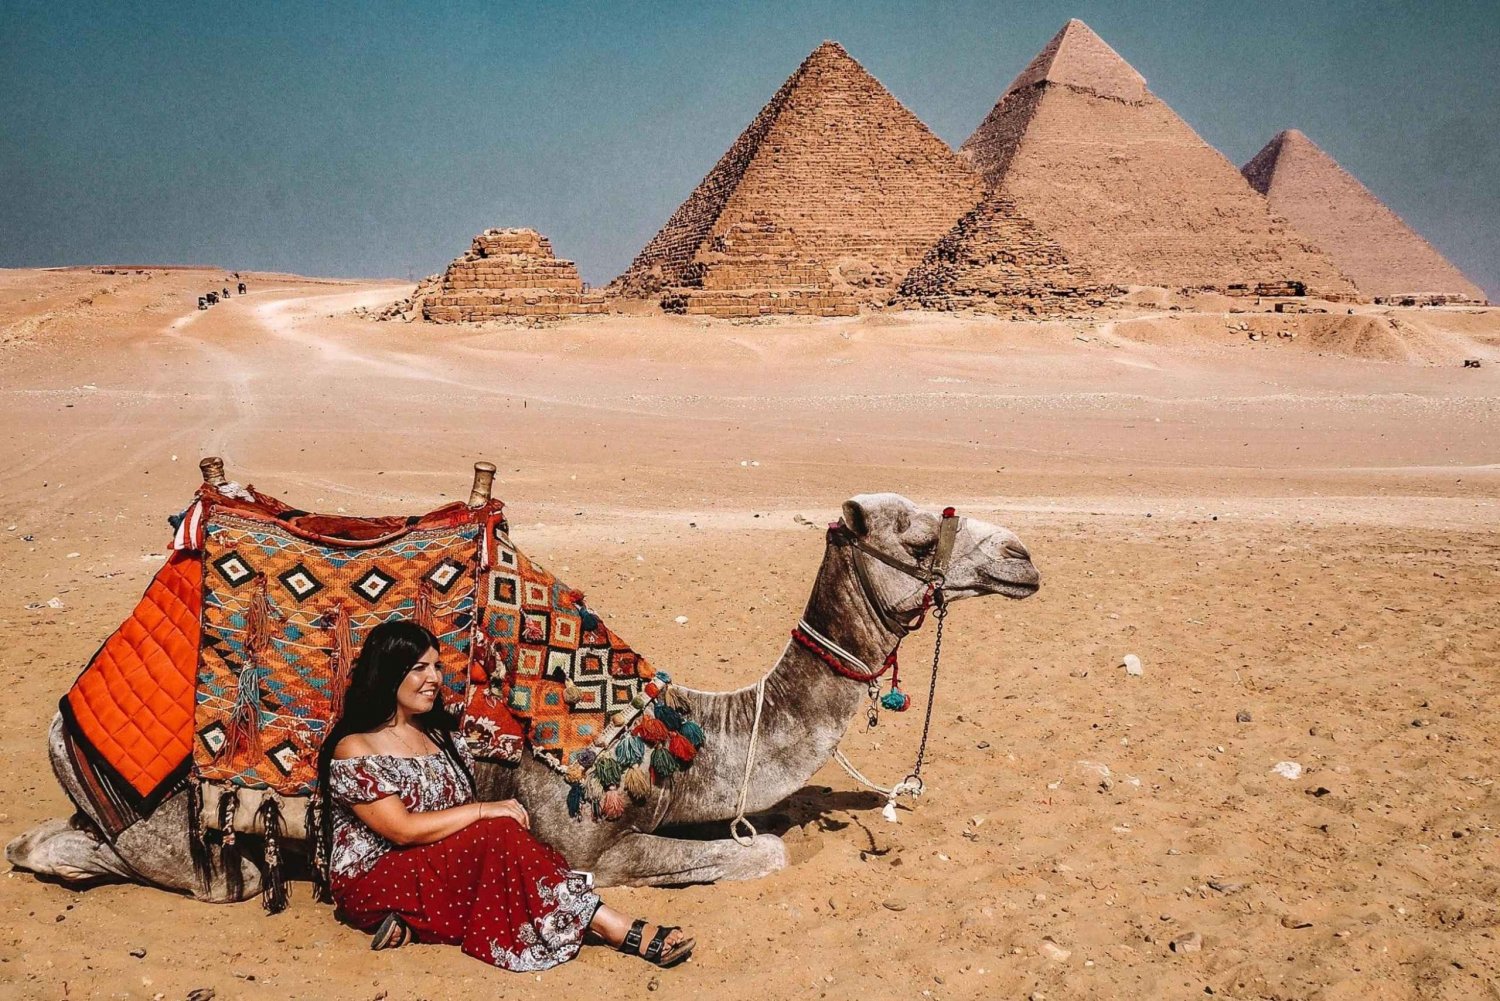 Cairo: Pirâmides de Gizé, Memphis e Sakkara - viagem de 1 dia